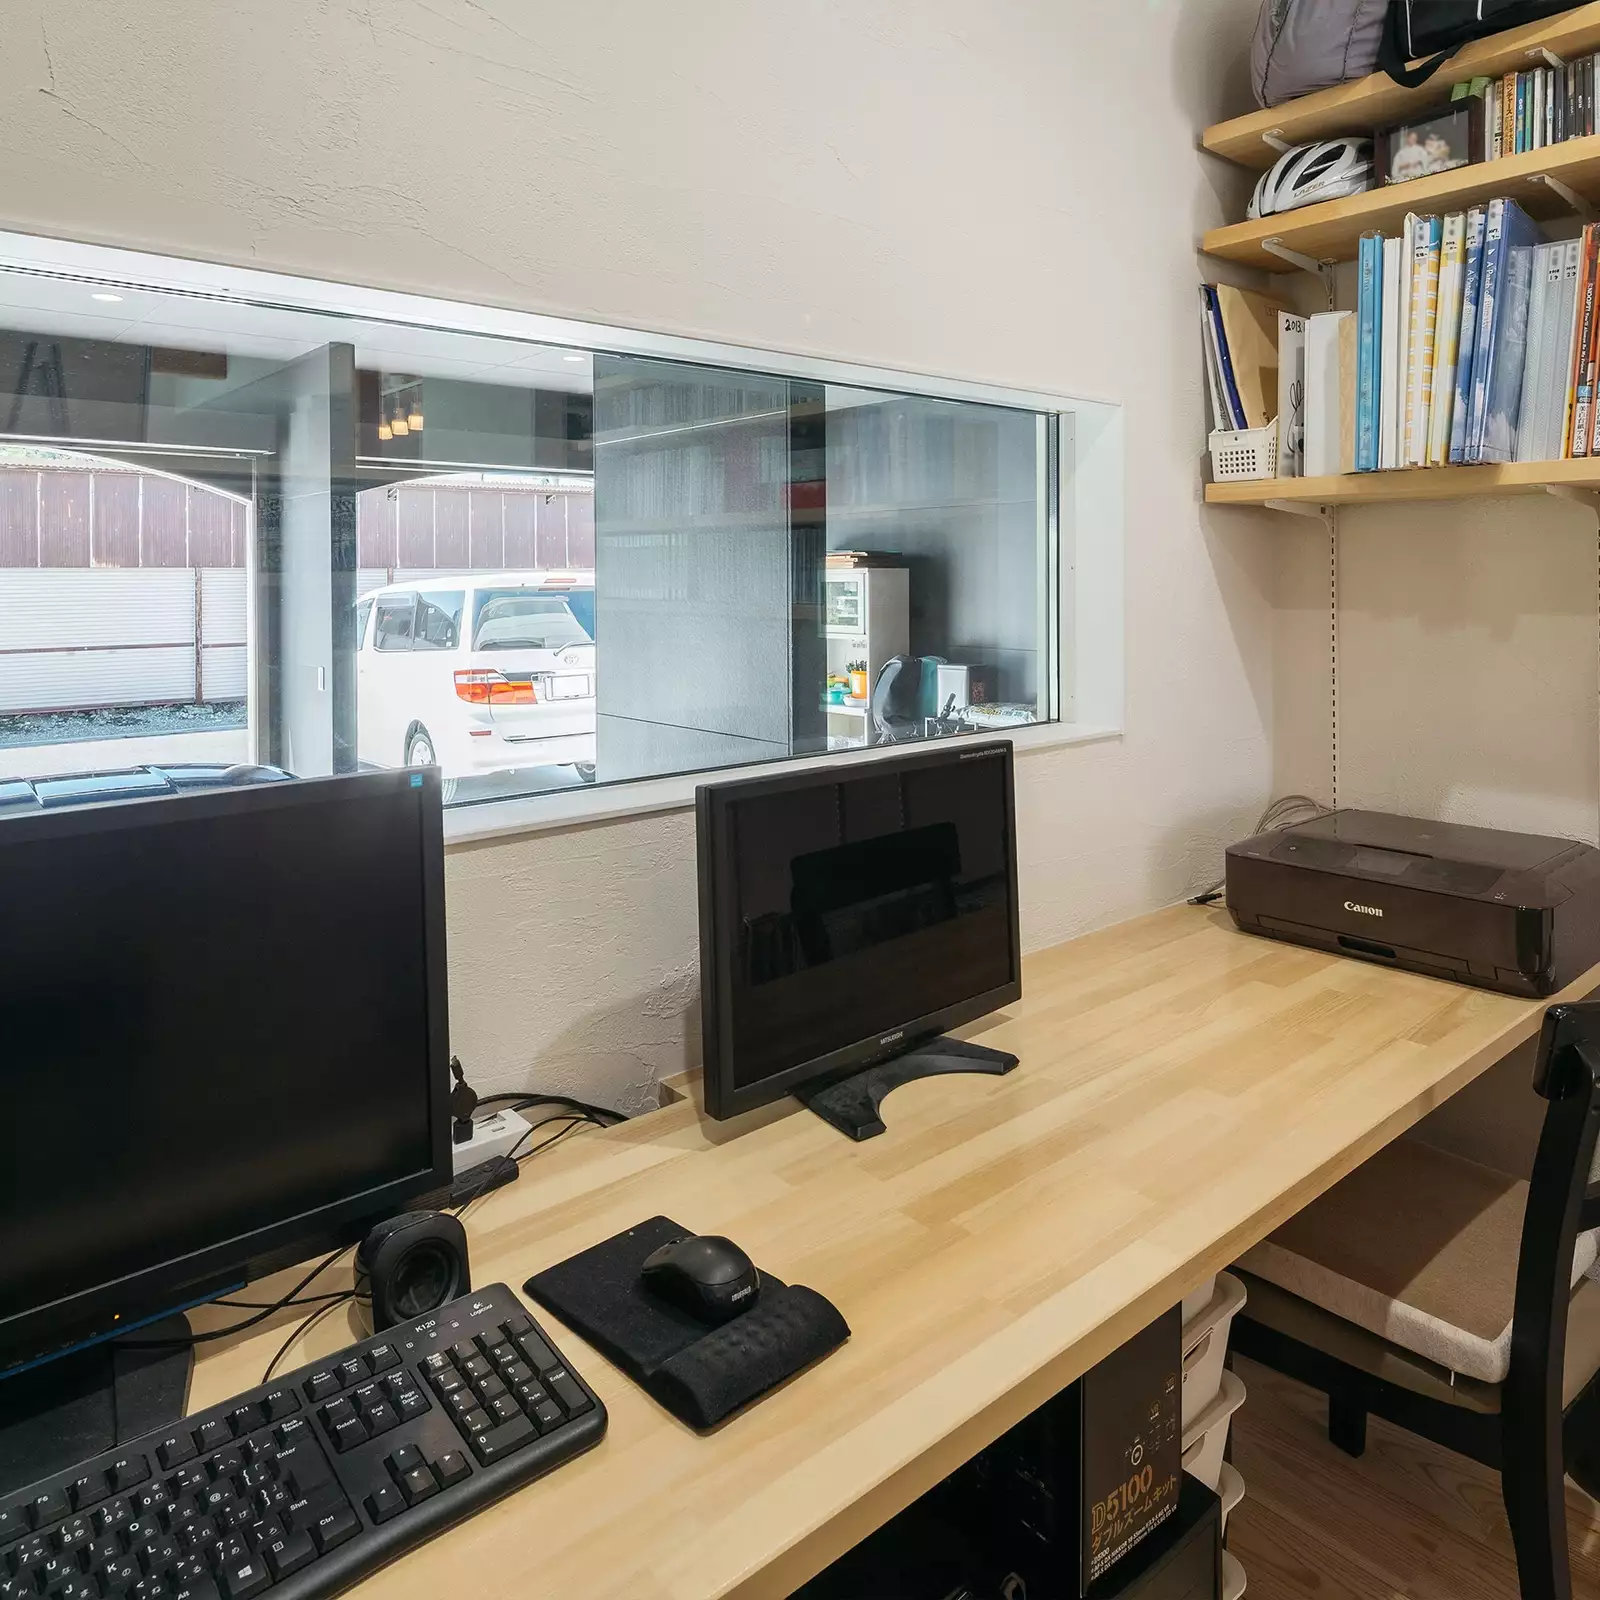 R+houseの物件の書斎の写真です。備え付けの机があり座った時目線の高さにはガレージがのぞける横長の窓。右には備え付けの棚が。